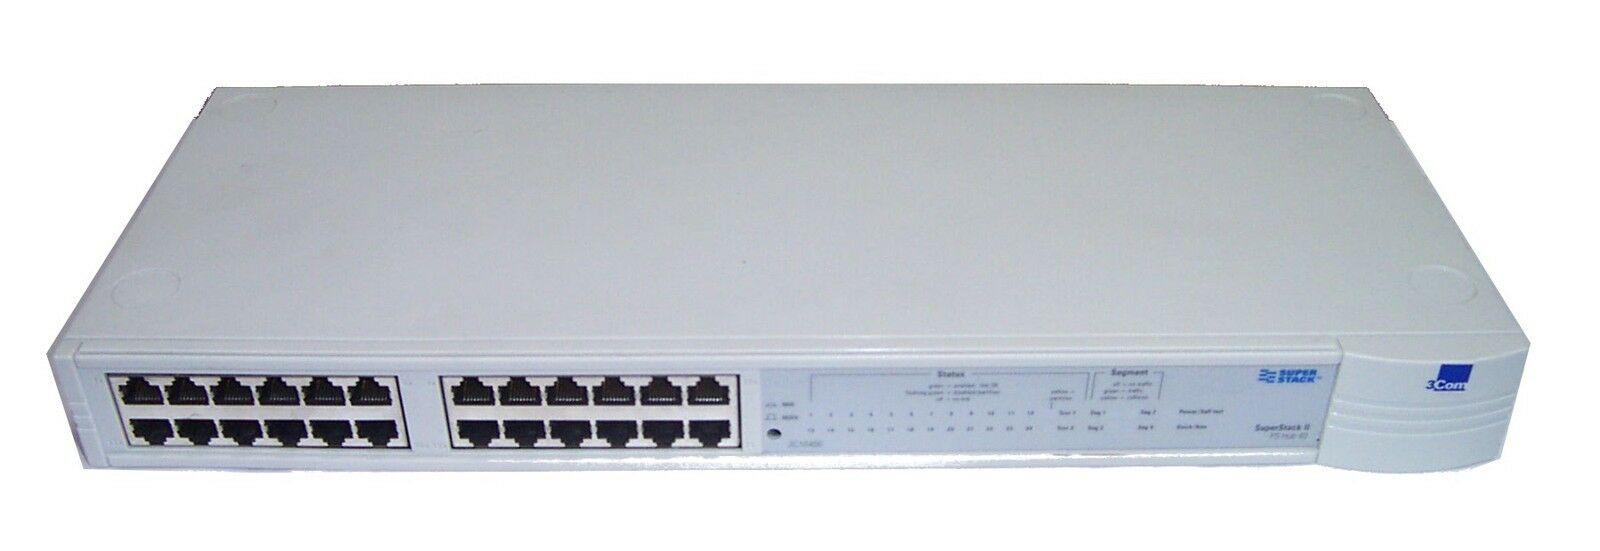 3Com SuperStack II PS  24-Port 100Mbits Ethernet Hub (3C16406 1640-610-000-6.00 USED)